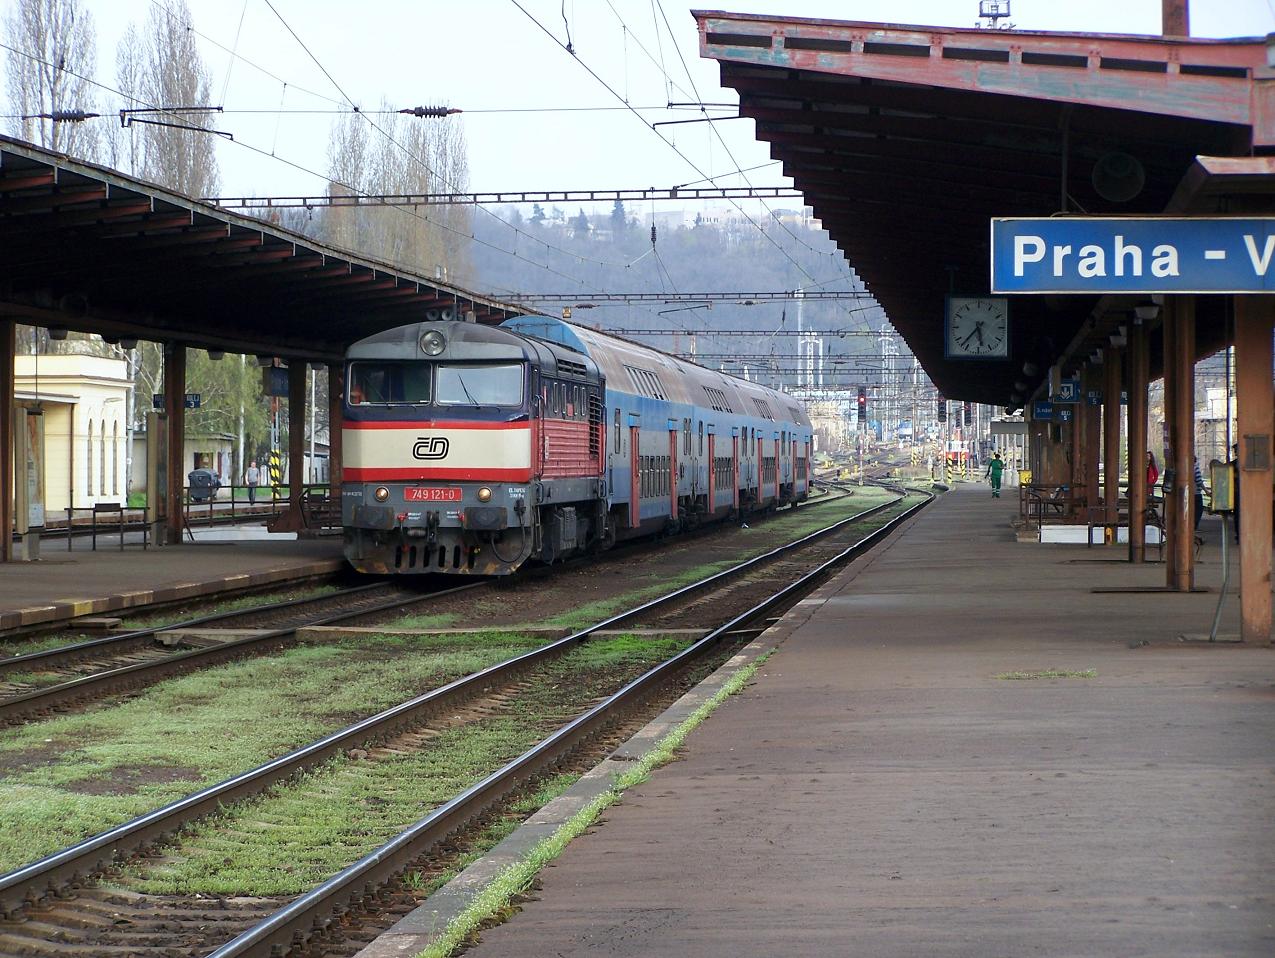 749.121 - os. 9062 - Praha Vrovice - 21.4.2013.